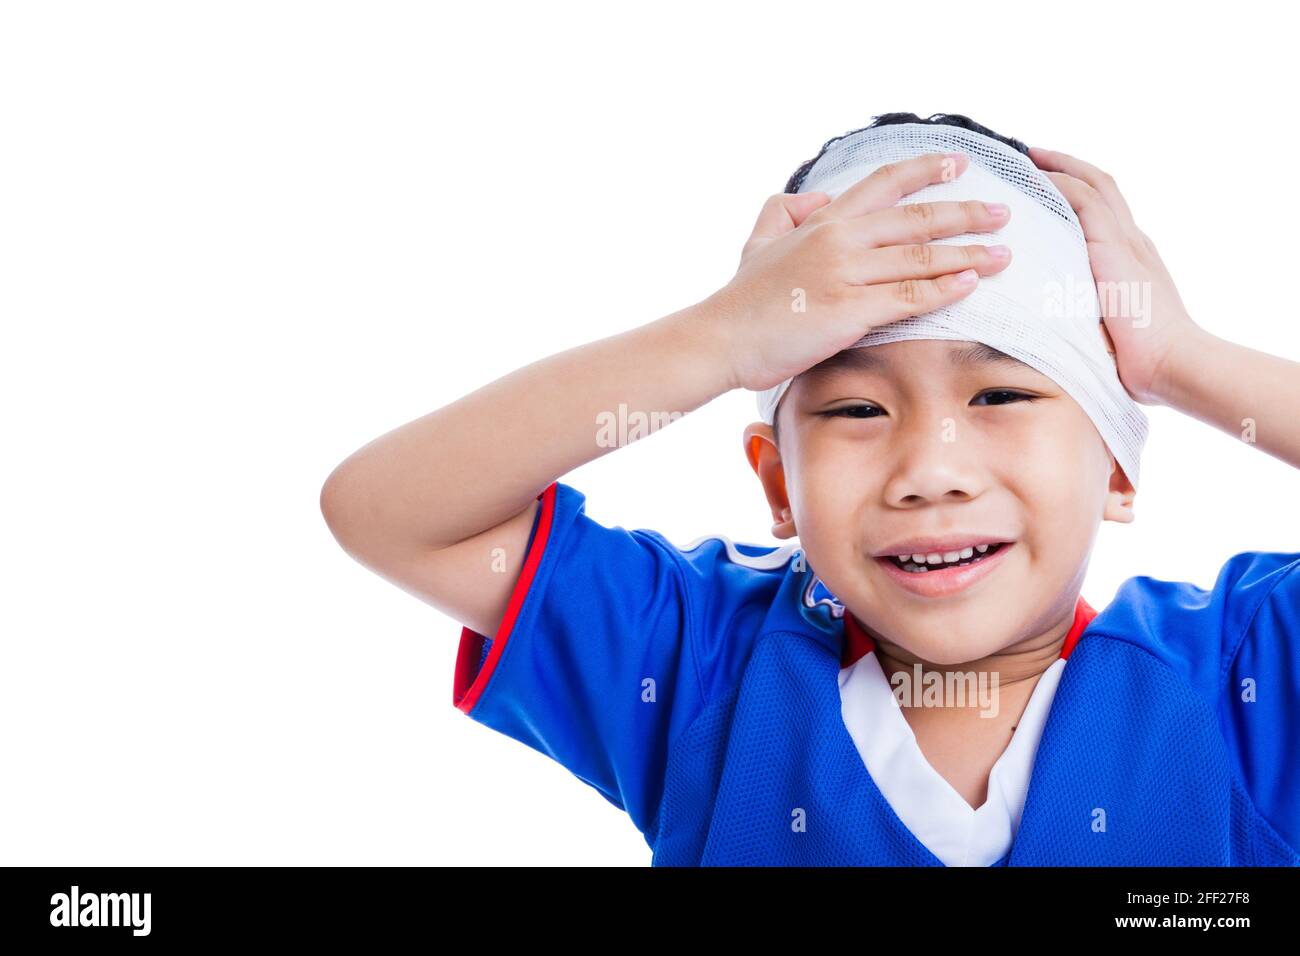 Blessures sportives. Jeune athlète enfant asiatique avec traumatisme de la tête pleurer et toucher son front douloureux. Le garçon a le bandage sur la tête, copie libre sp Banque D'Images